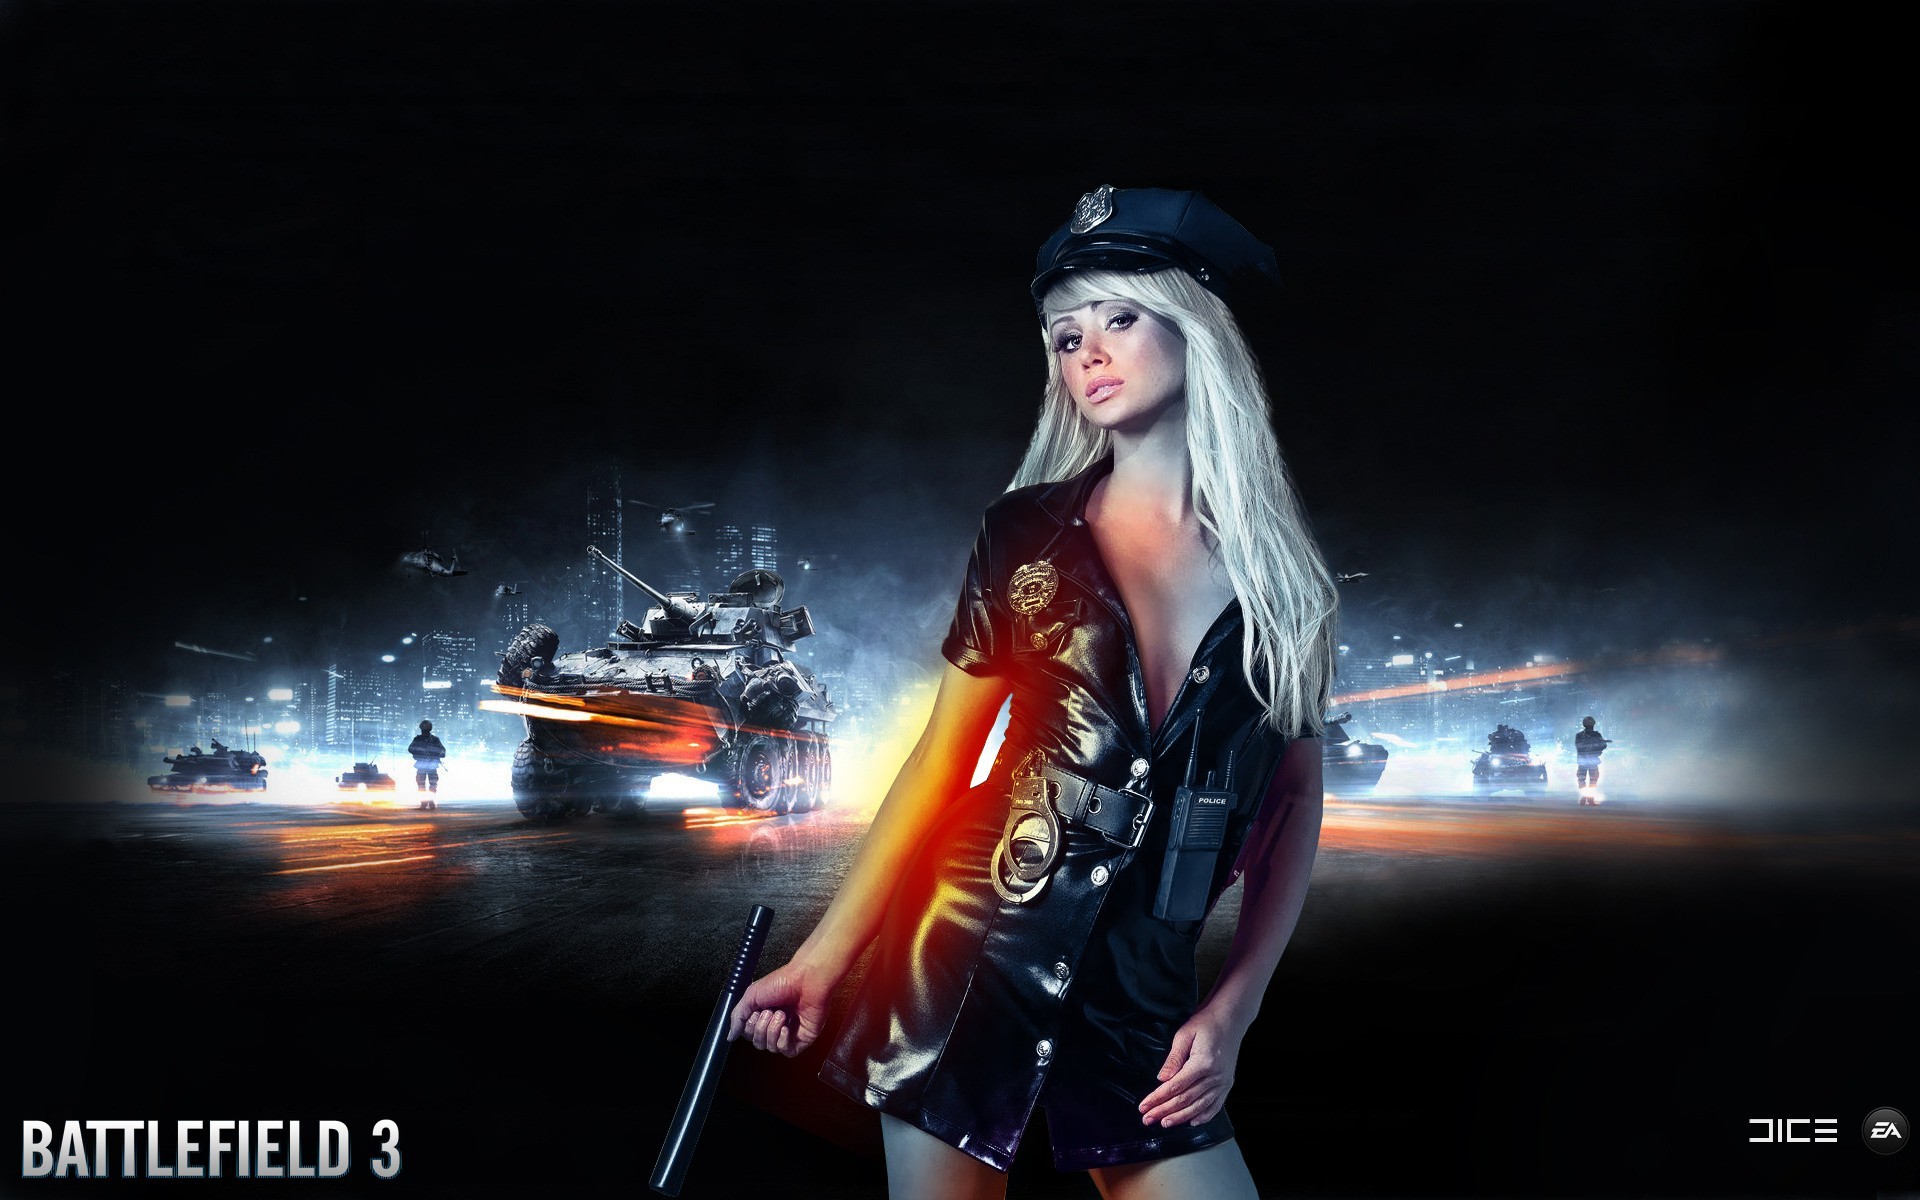 Фото Battlefield 3 постер заставка - бесплатные картинки на Fonwall.